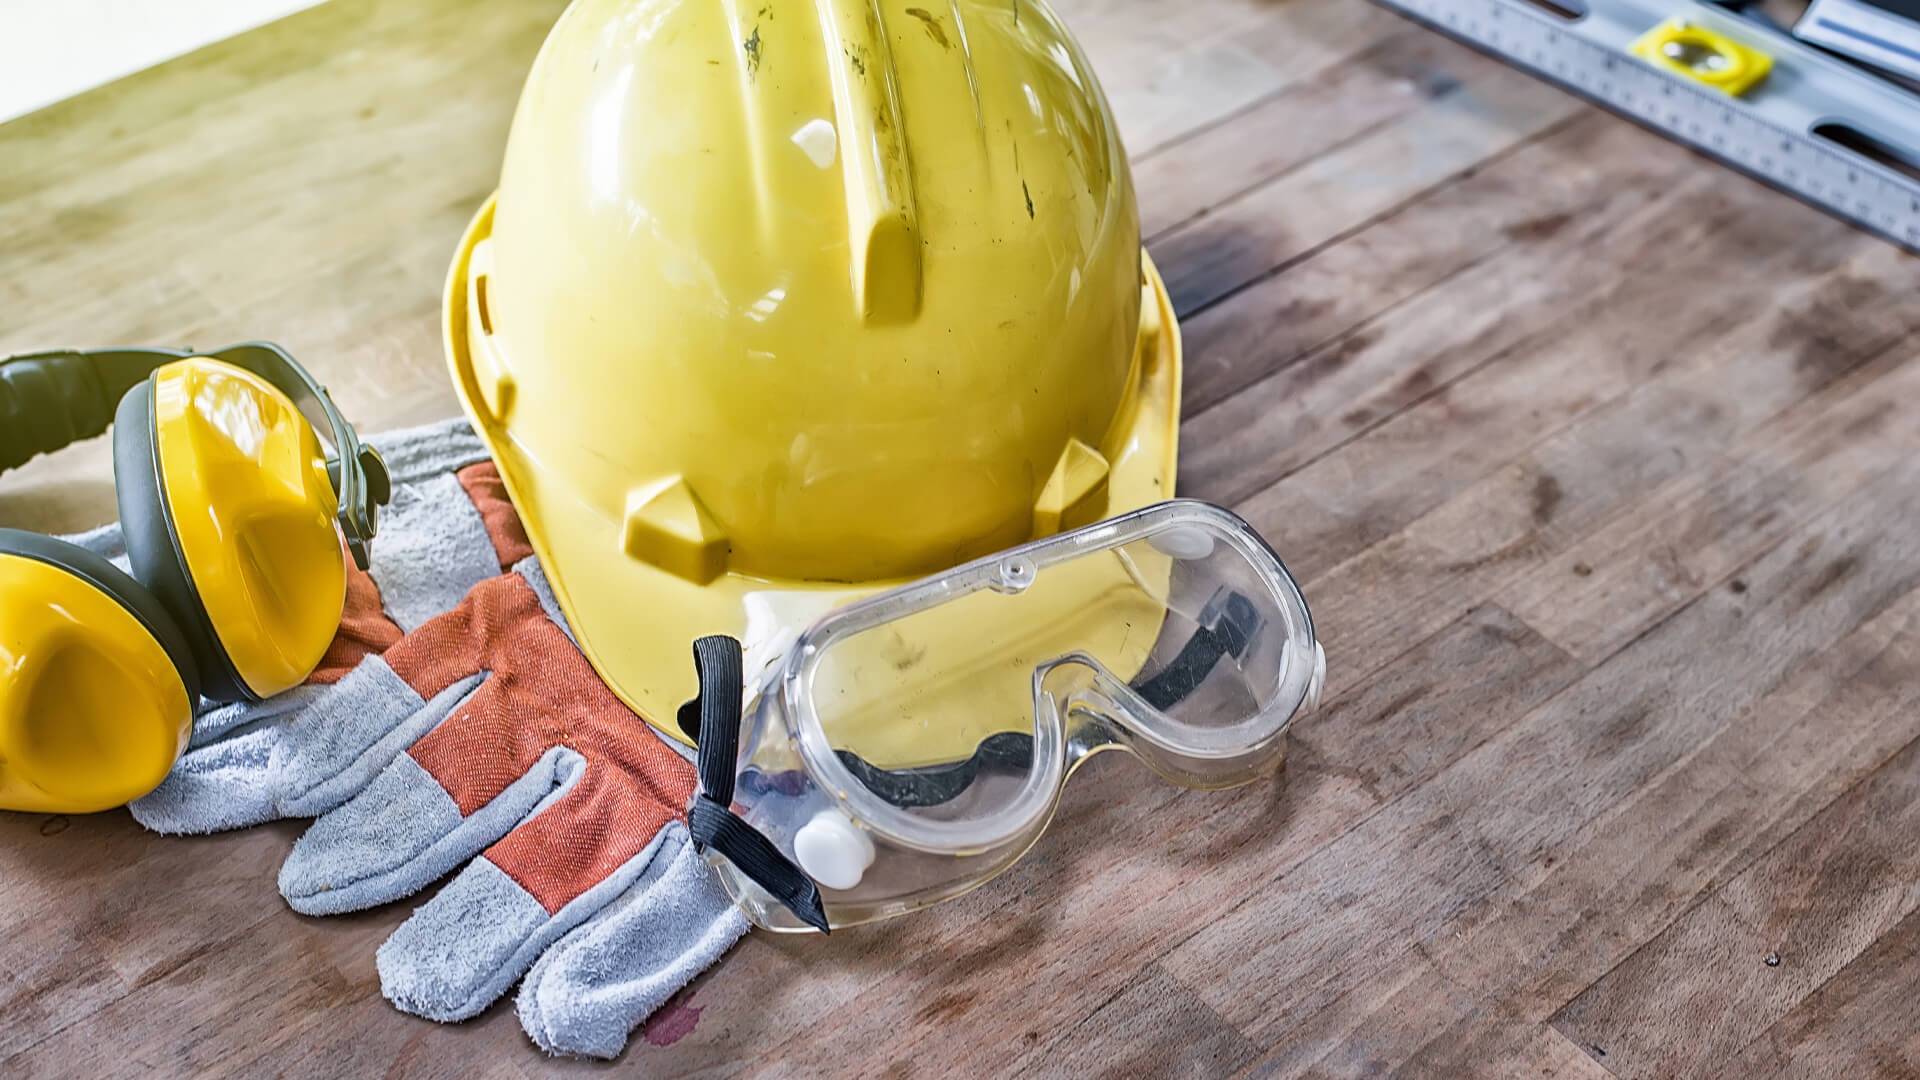 đồ bảo hộ lao động là yếu tố không thể thiếu đối với sự an toàn và bảo vệ cho người lao động